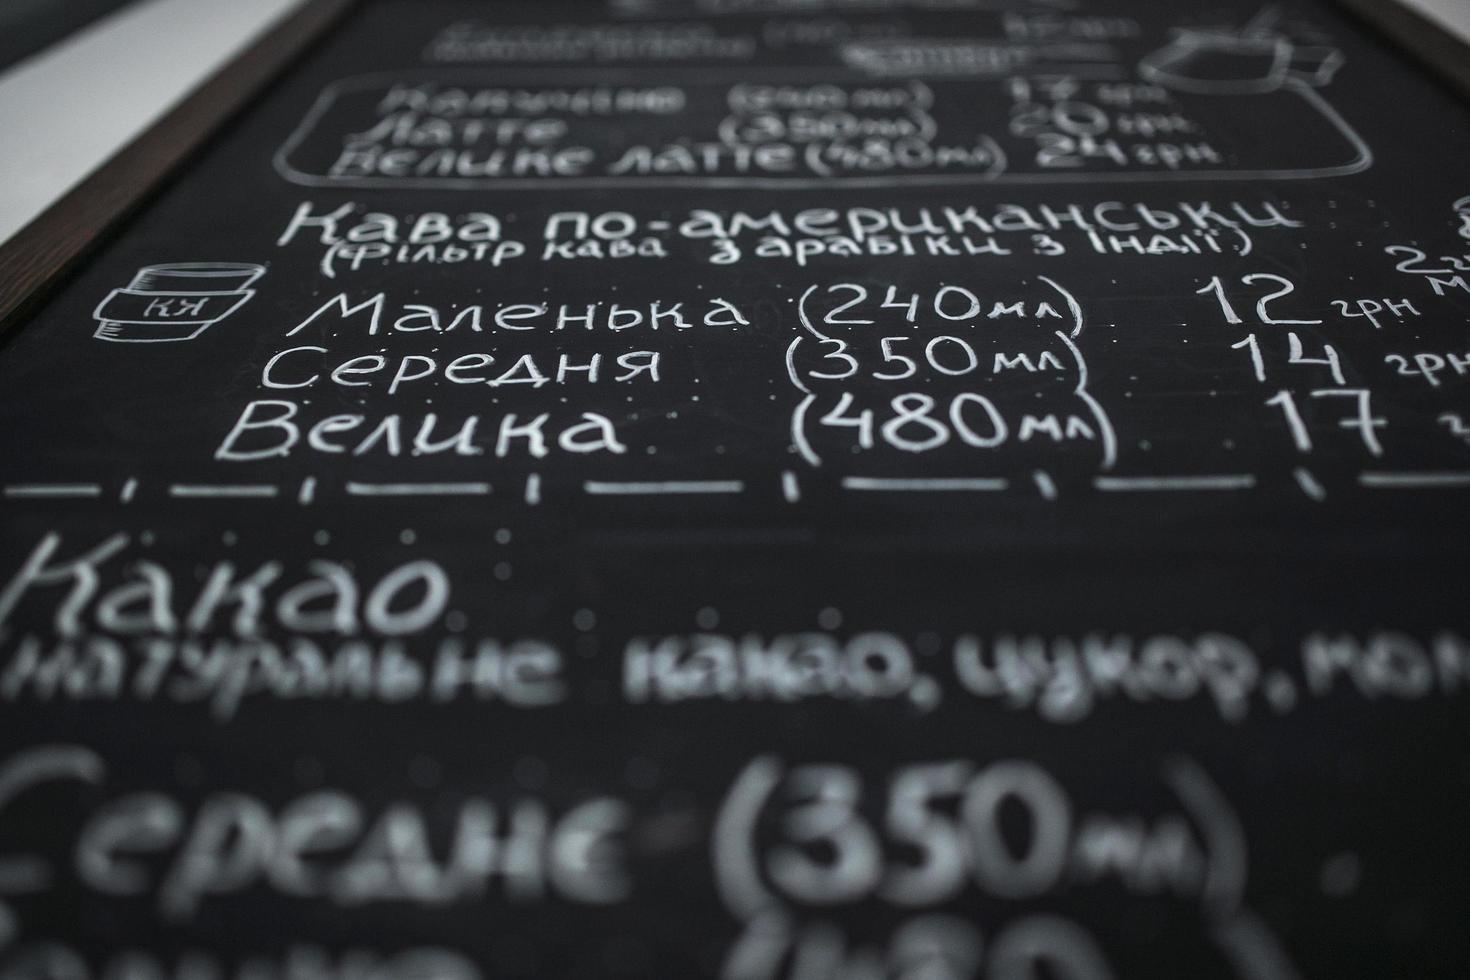 kiev. Oekraïne, apr 18 2019 -koffie winkel detail foto